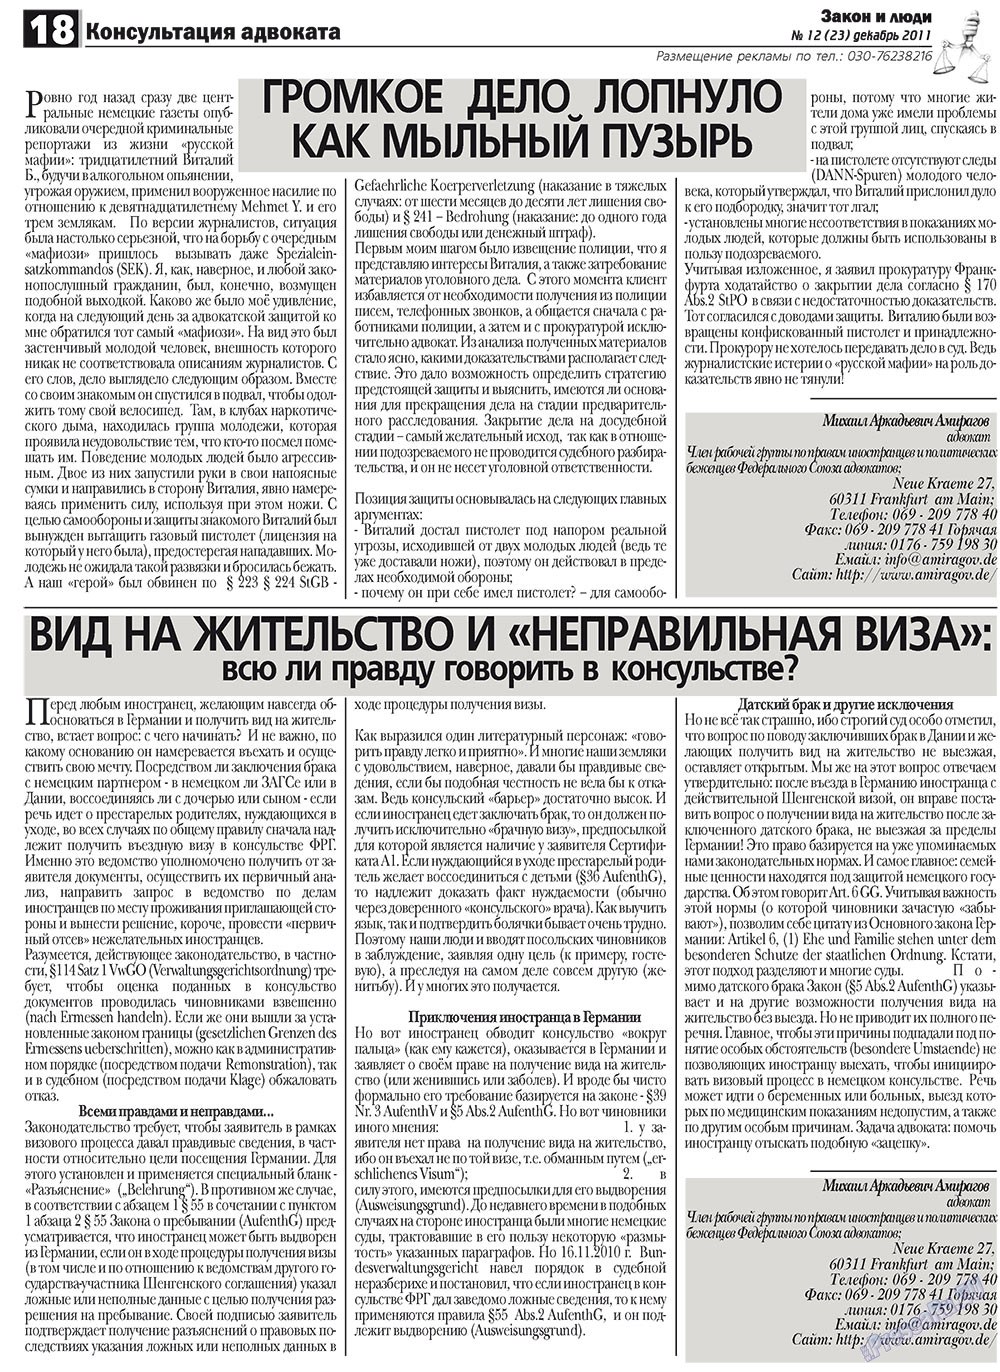 Закон и люди, газета. 2011 №12 стр.18